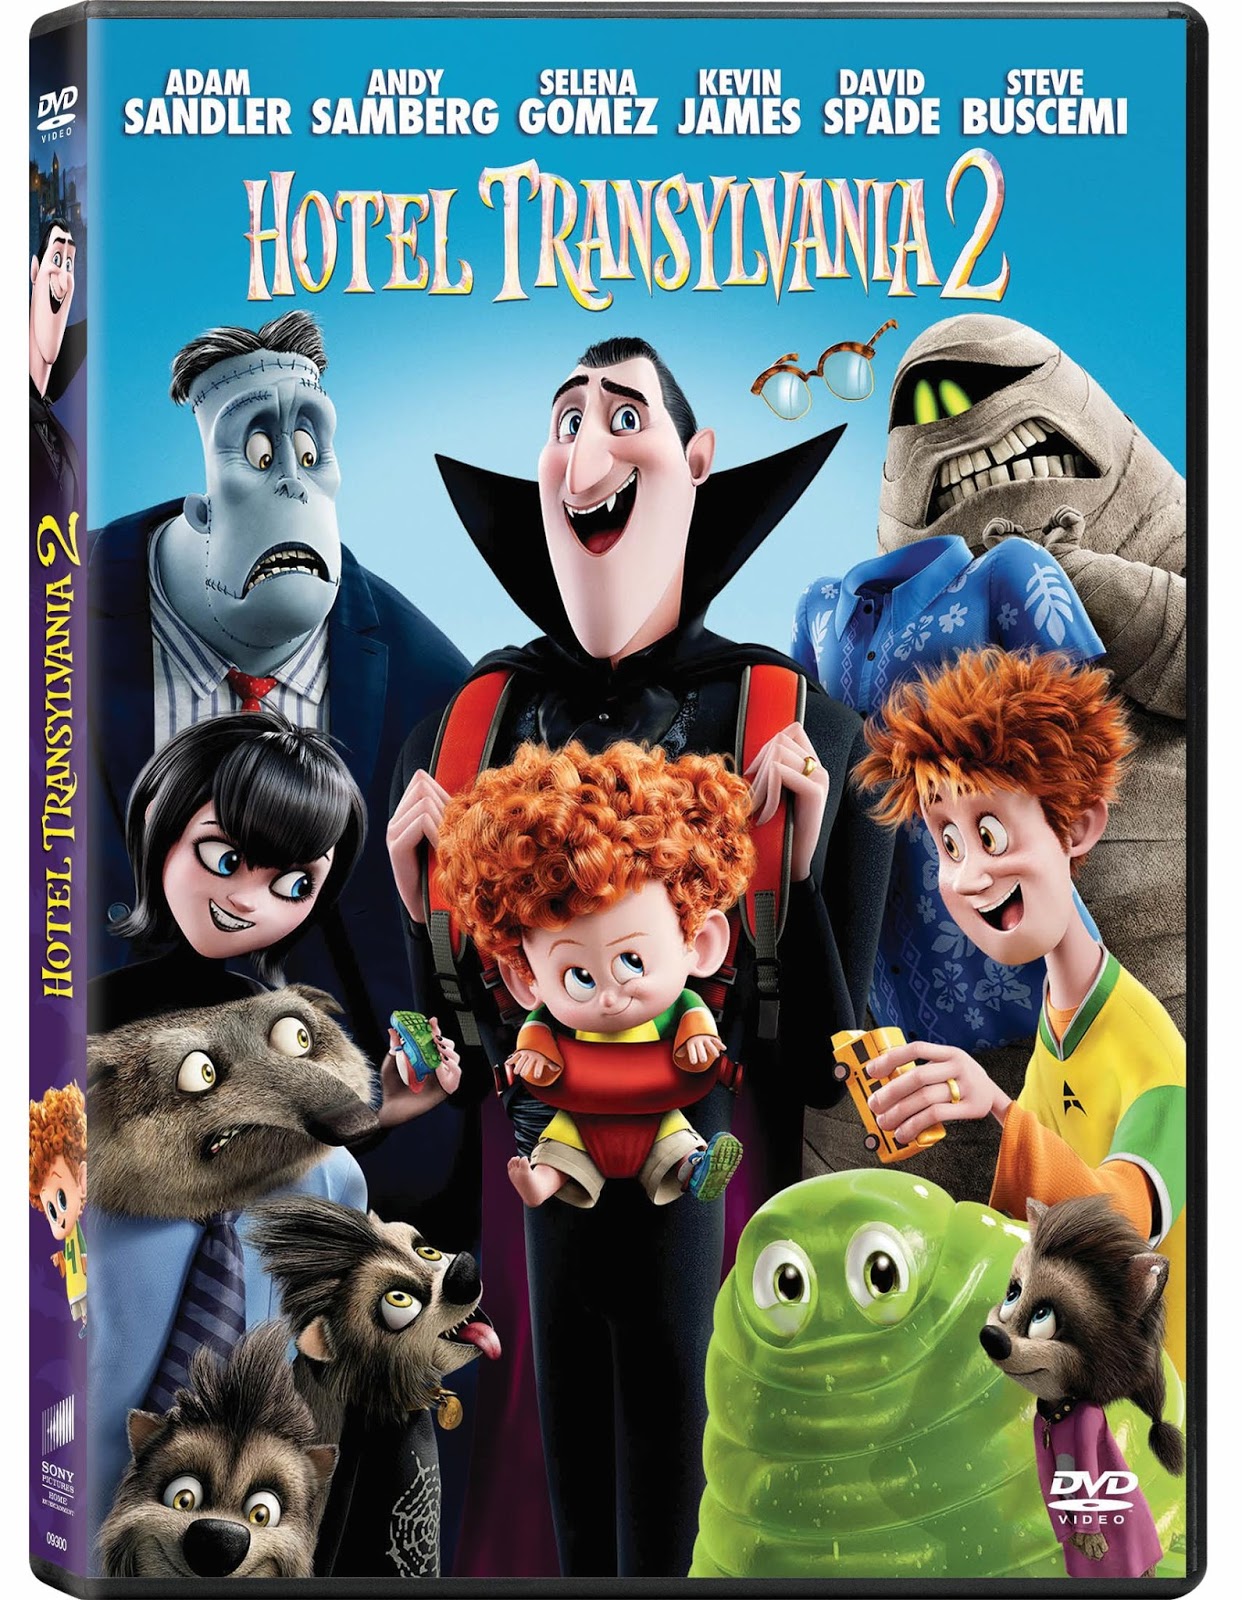 Los del sótano: Hotel Transylvania 2 en DVD, Blu-ray y Blu-ray 3D